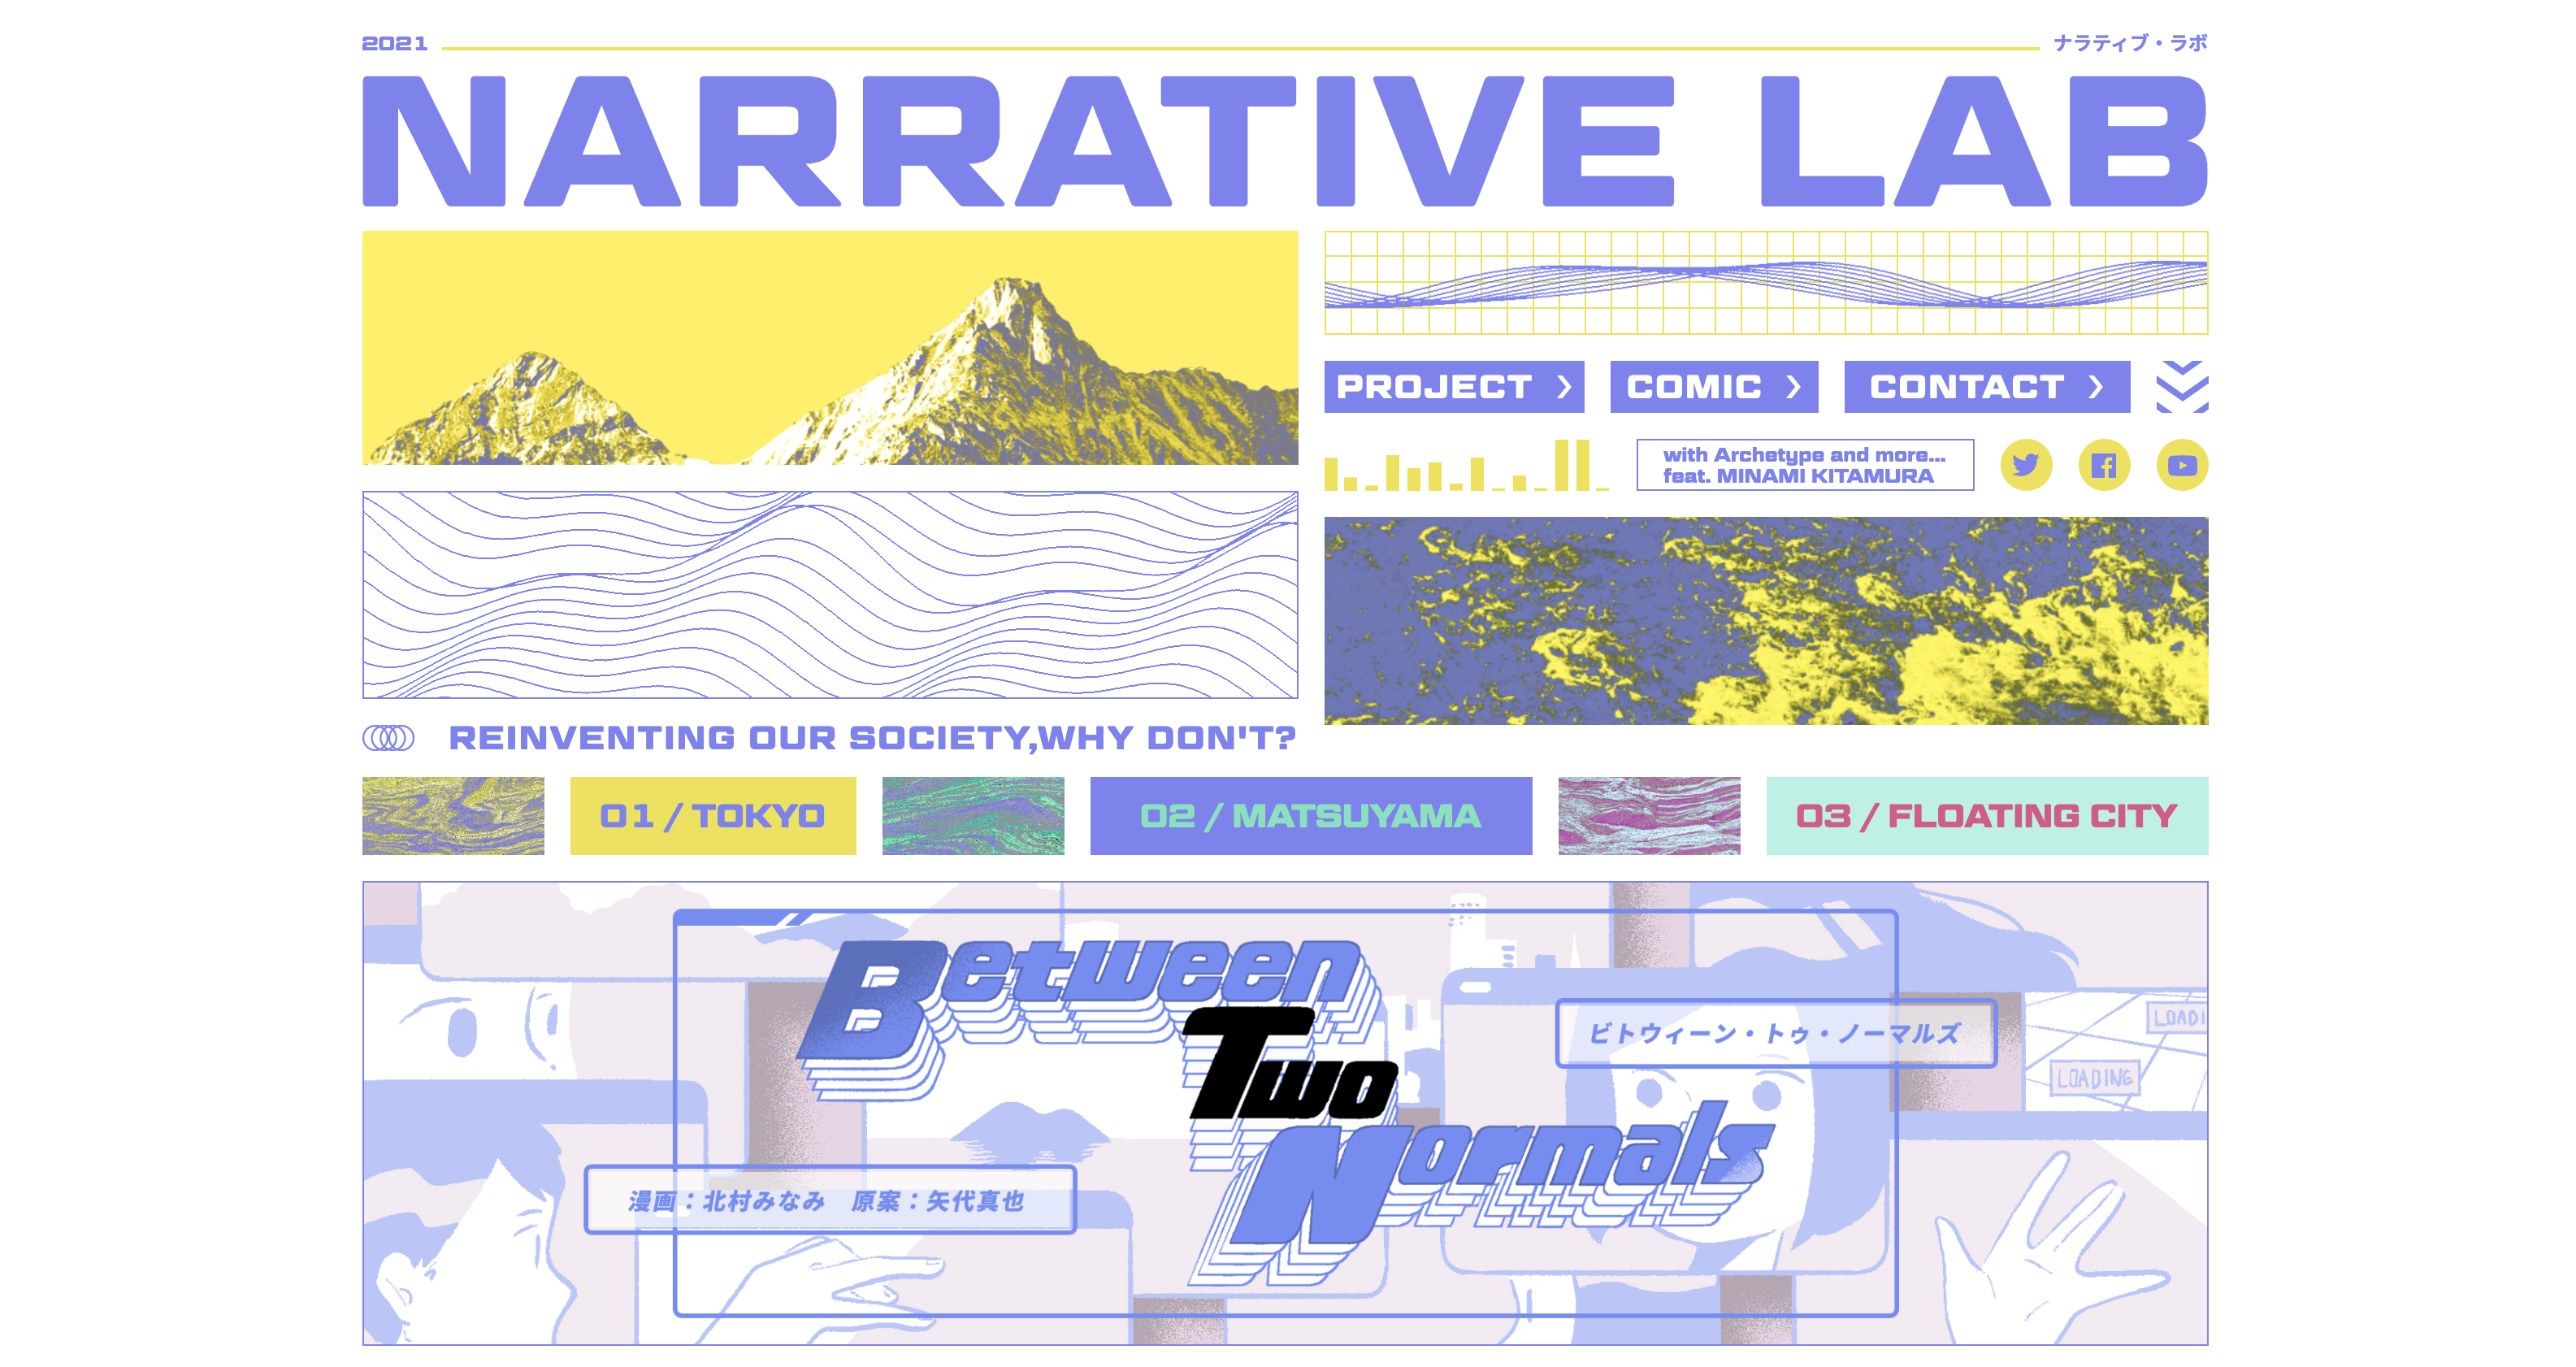 コミュニティー・プロジェクト「NARRATIVE LAB（ナラティブラボ）」が、新しい生活様式から生まれたSFコミックを発表